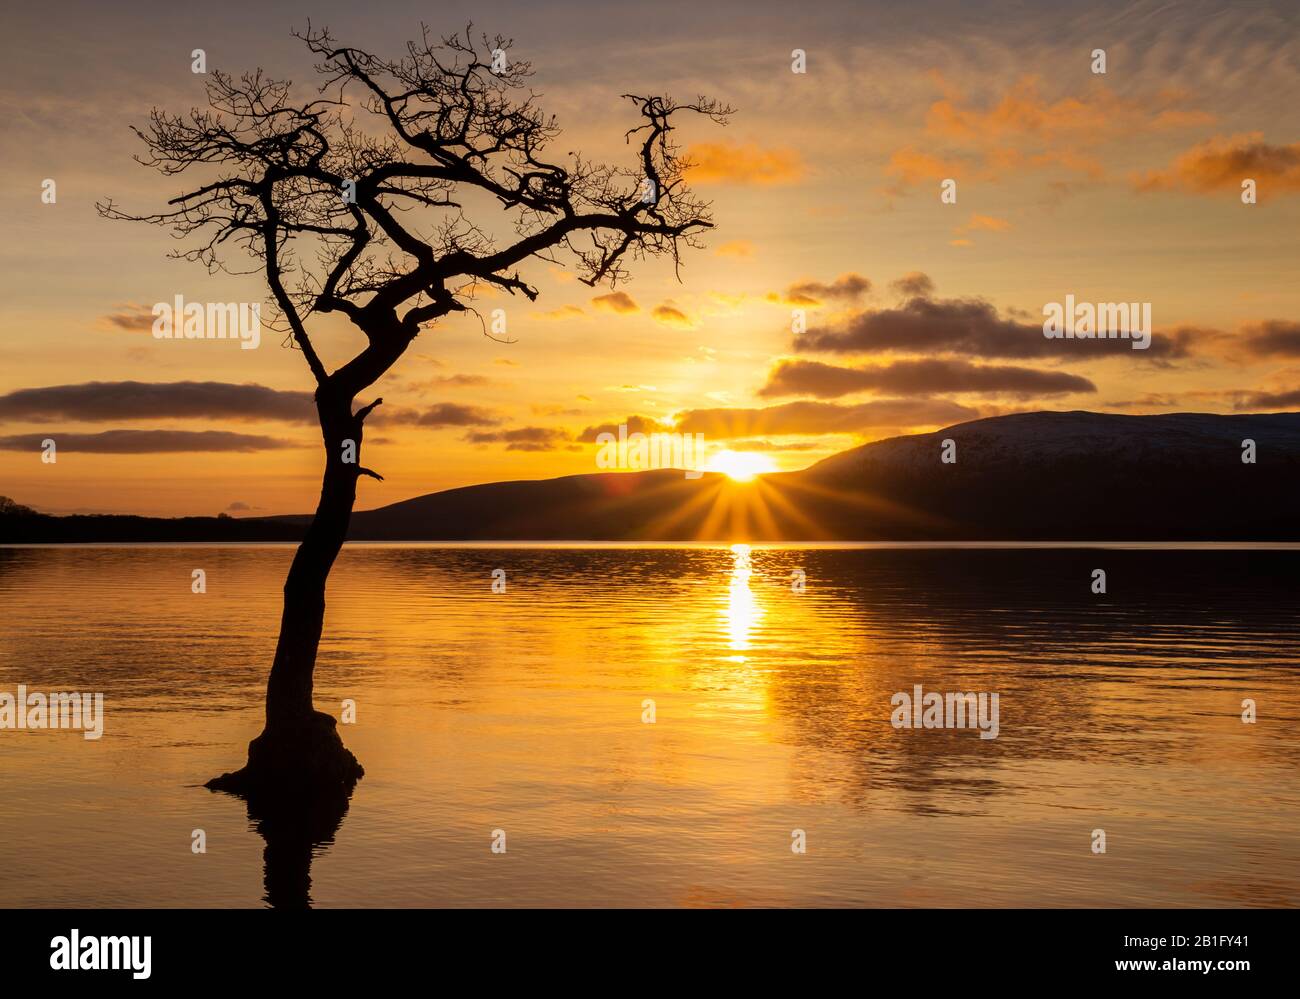 Coucher de soleil sur le Loch Lomond un seul arbre dans la baie de Milarrochy Loch Lomond et le parc national des Trossachs près de Balmaha Stirling Ecosse Royaume-Uni GB Europe Banque D'Images